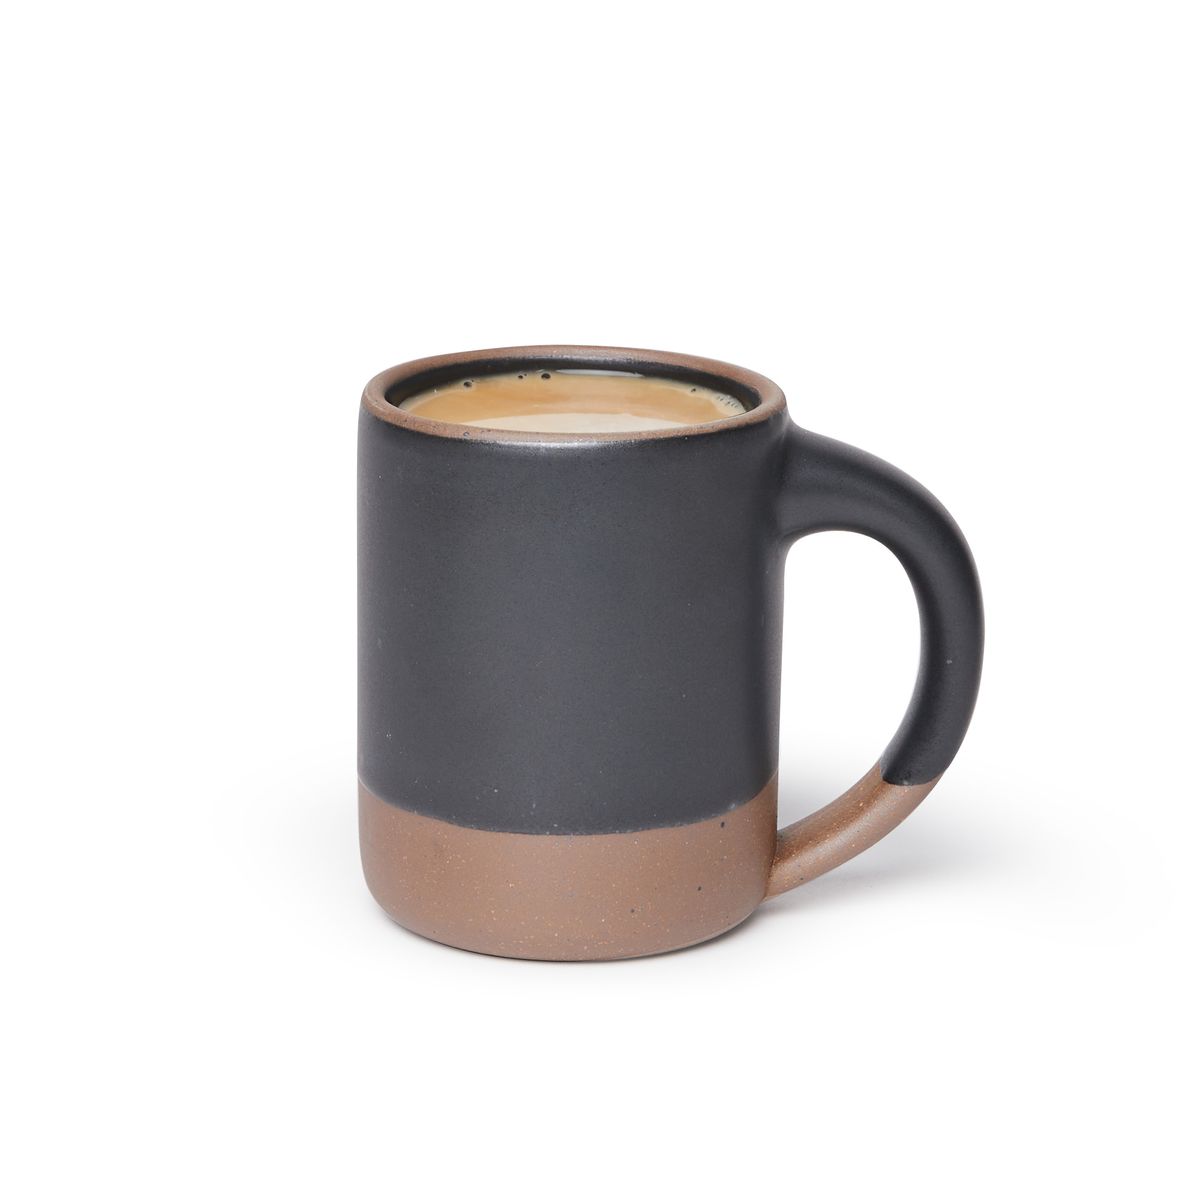 The Big Mug in Black Mountain, full of coffee